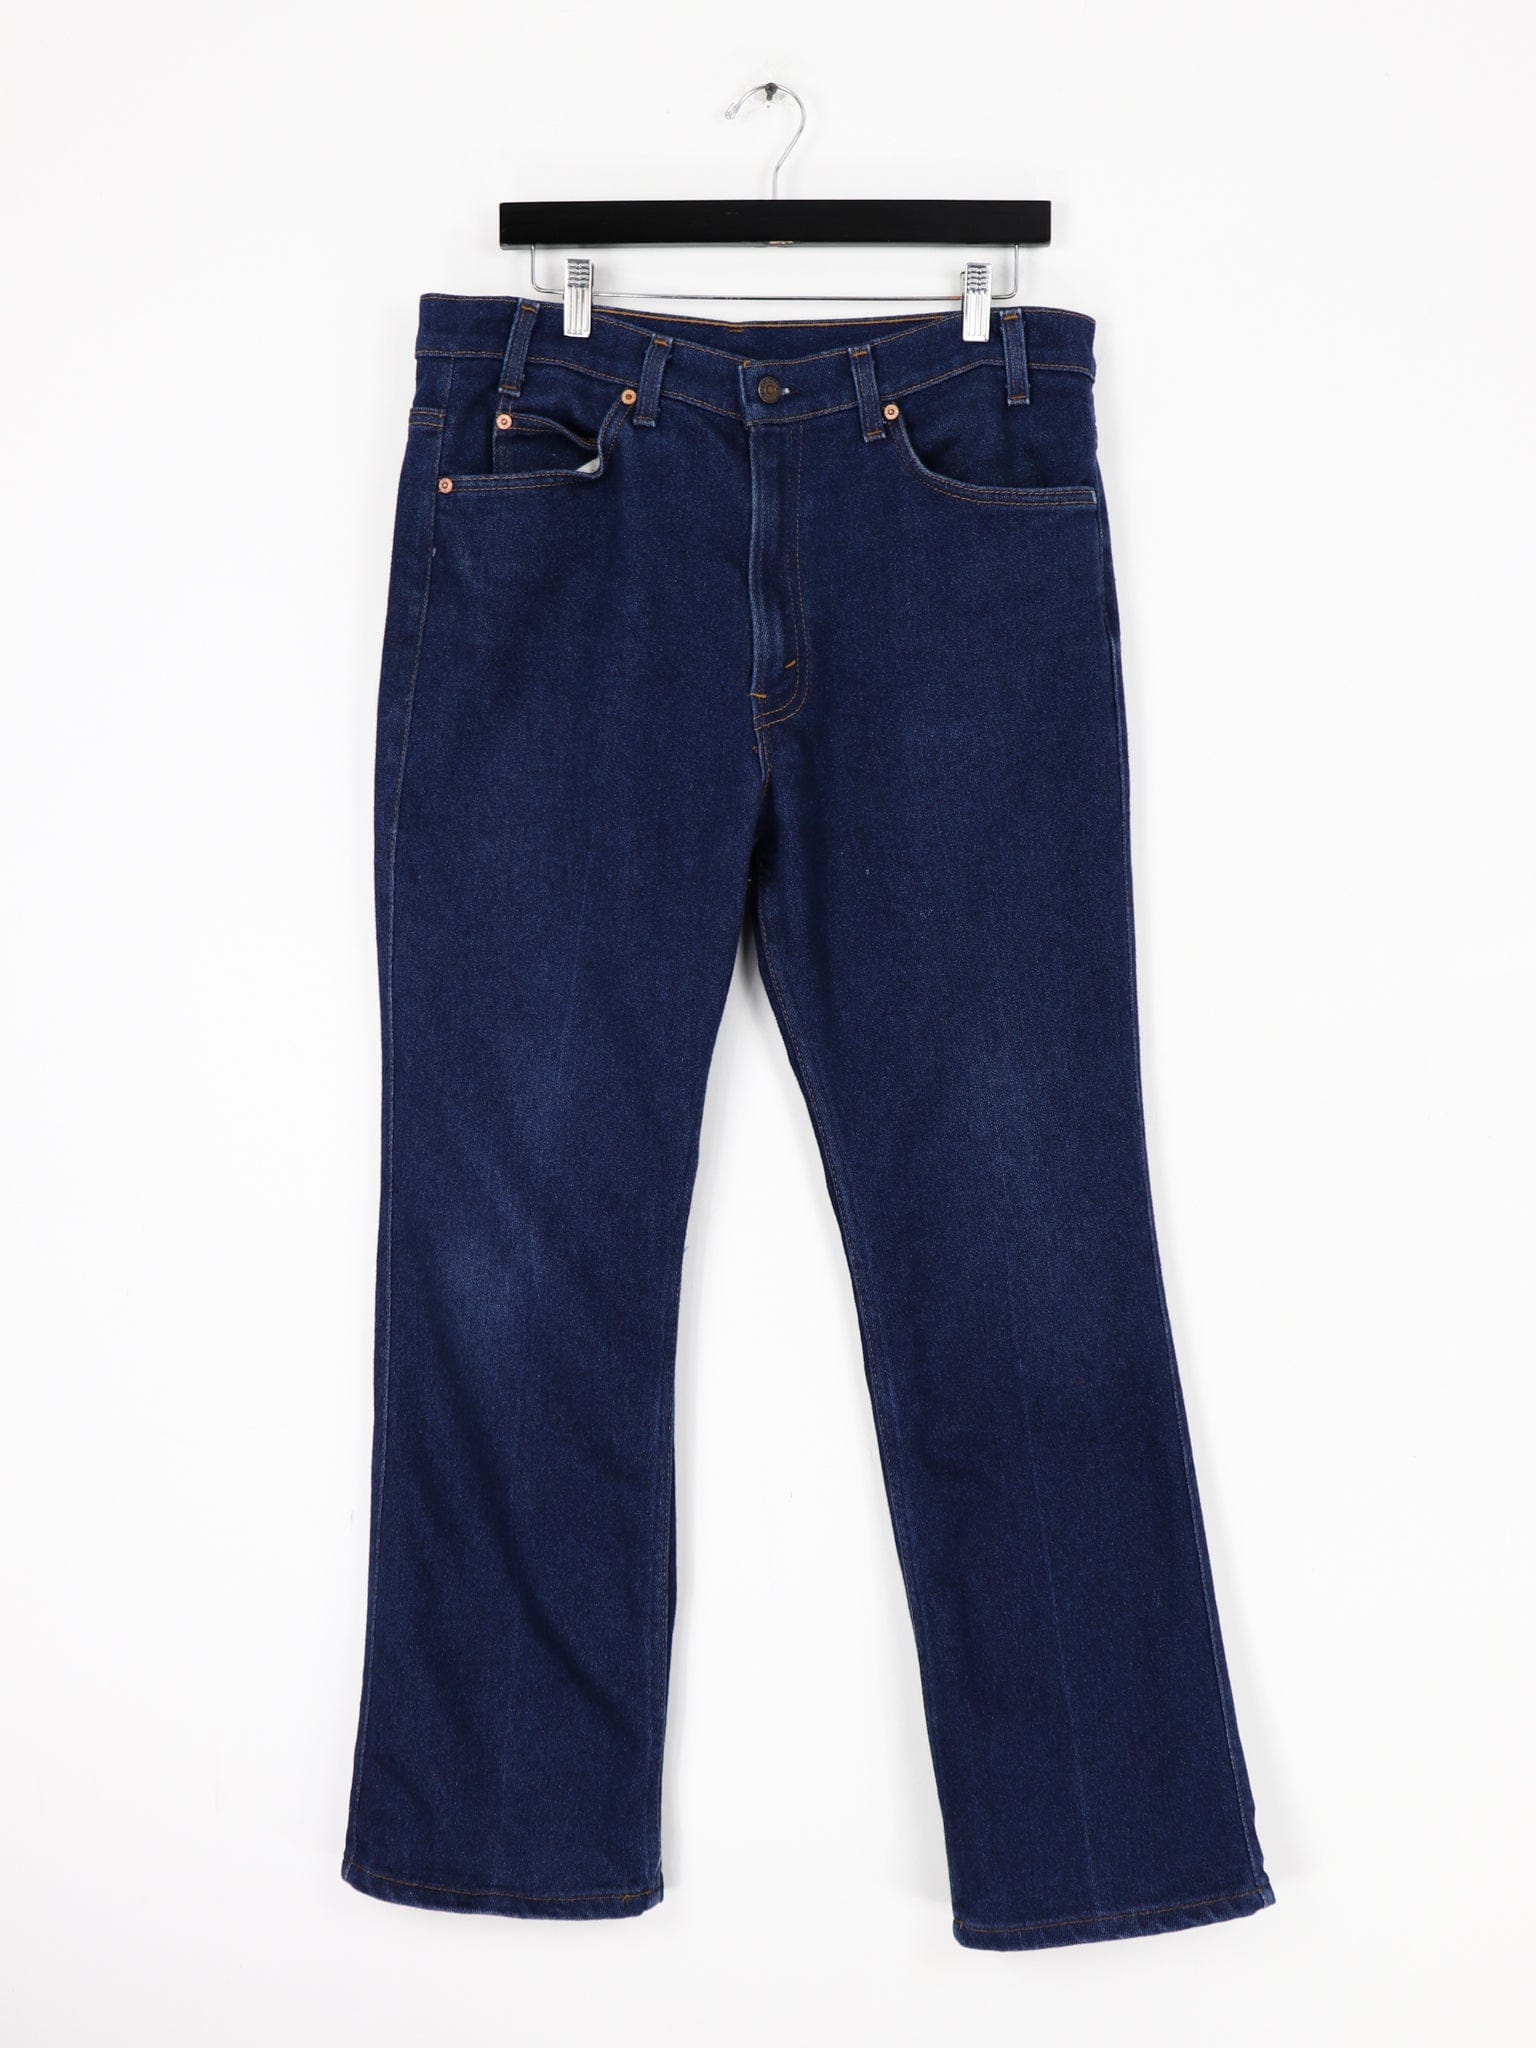 Vintage Levi's 515 Bootcut Denim Jeans Size 36 x 30